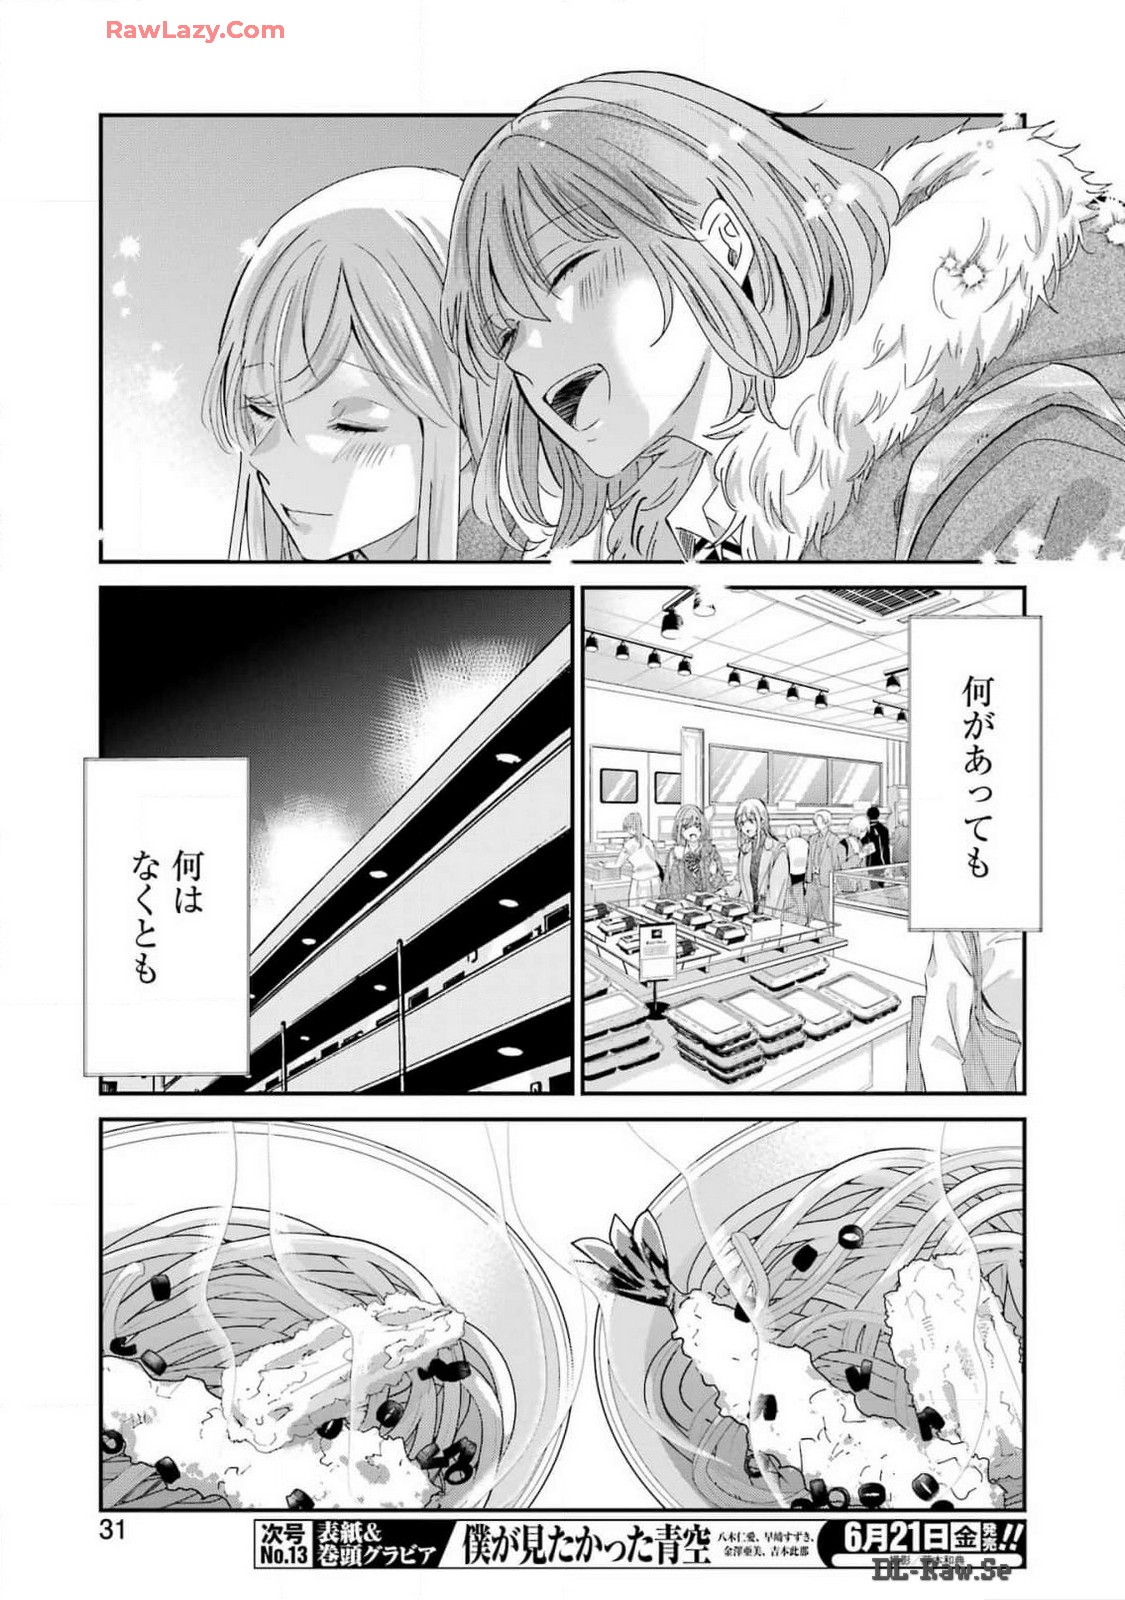 Ani no Yome to Kurashite Imasu. - Chapter 151 - Page 16